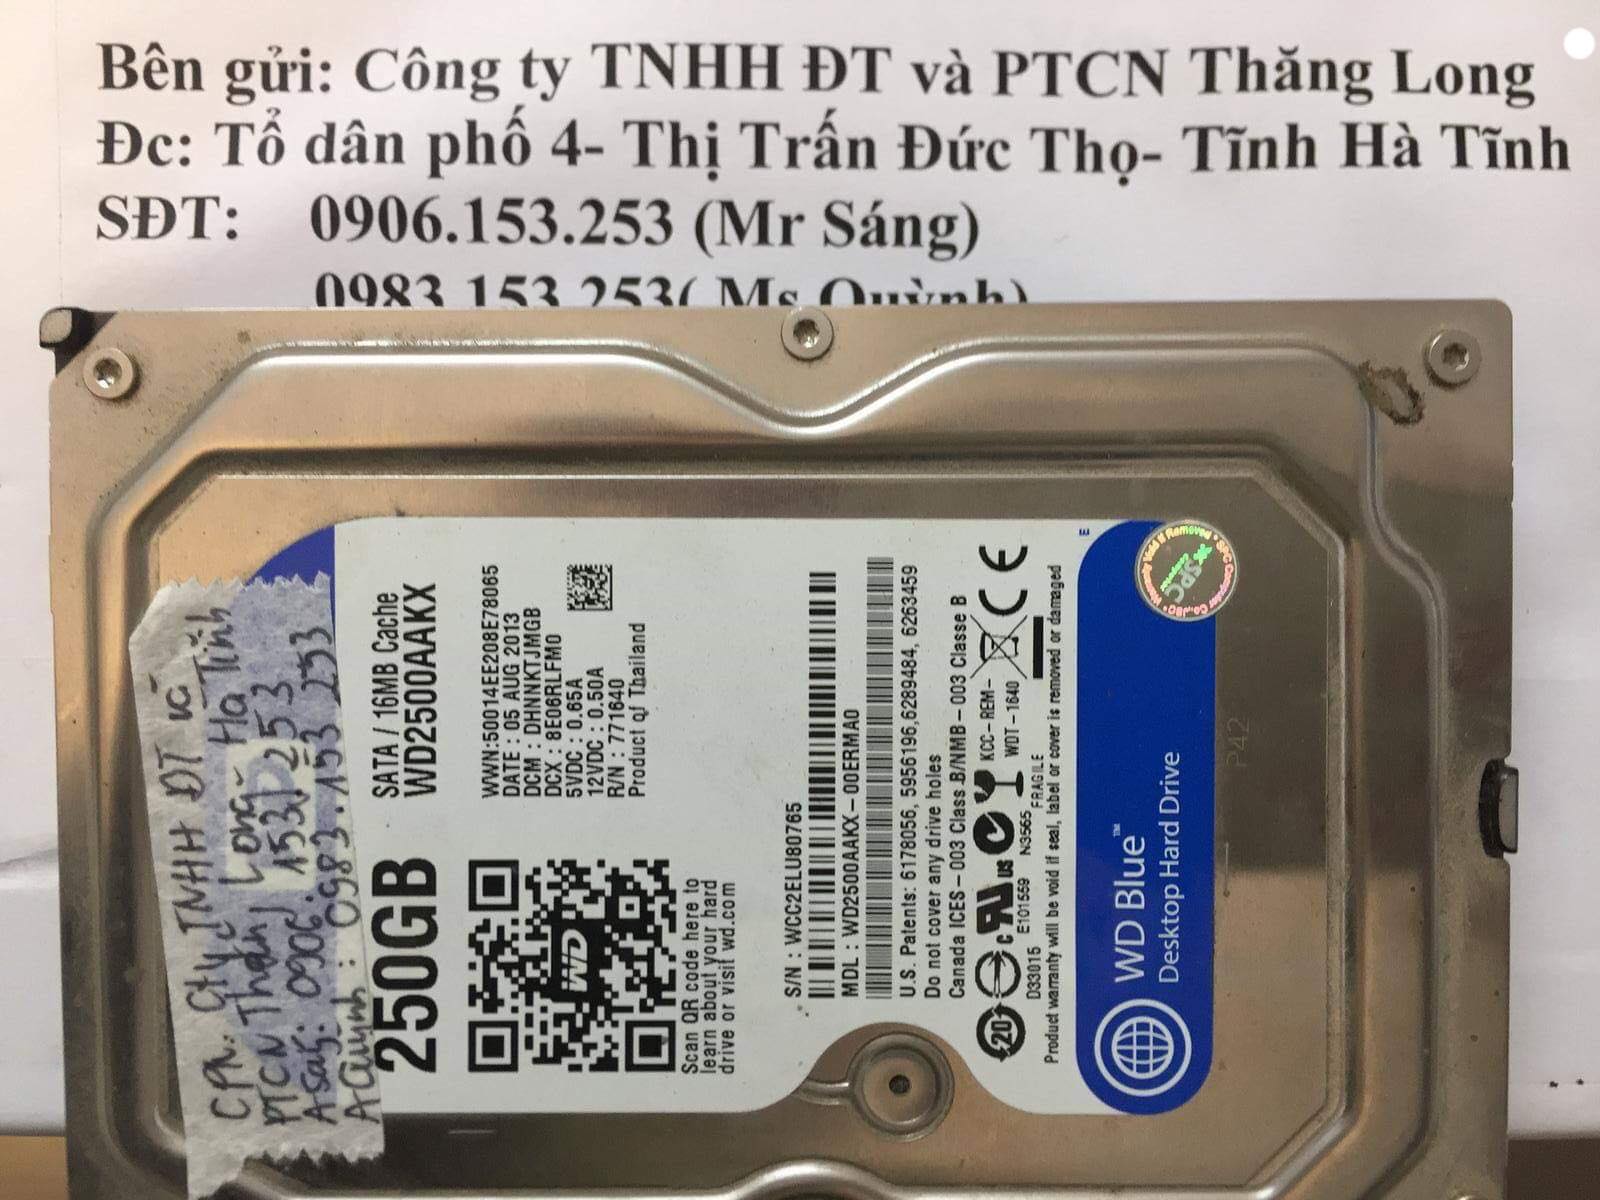 Lấy lại dữ liệu ổ cứng Western 250GB đầu đọc kém tại Hà Tĩnh 27/12/2018 - cuumaytinh